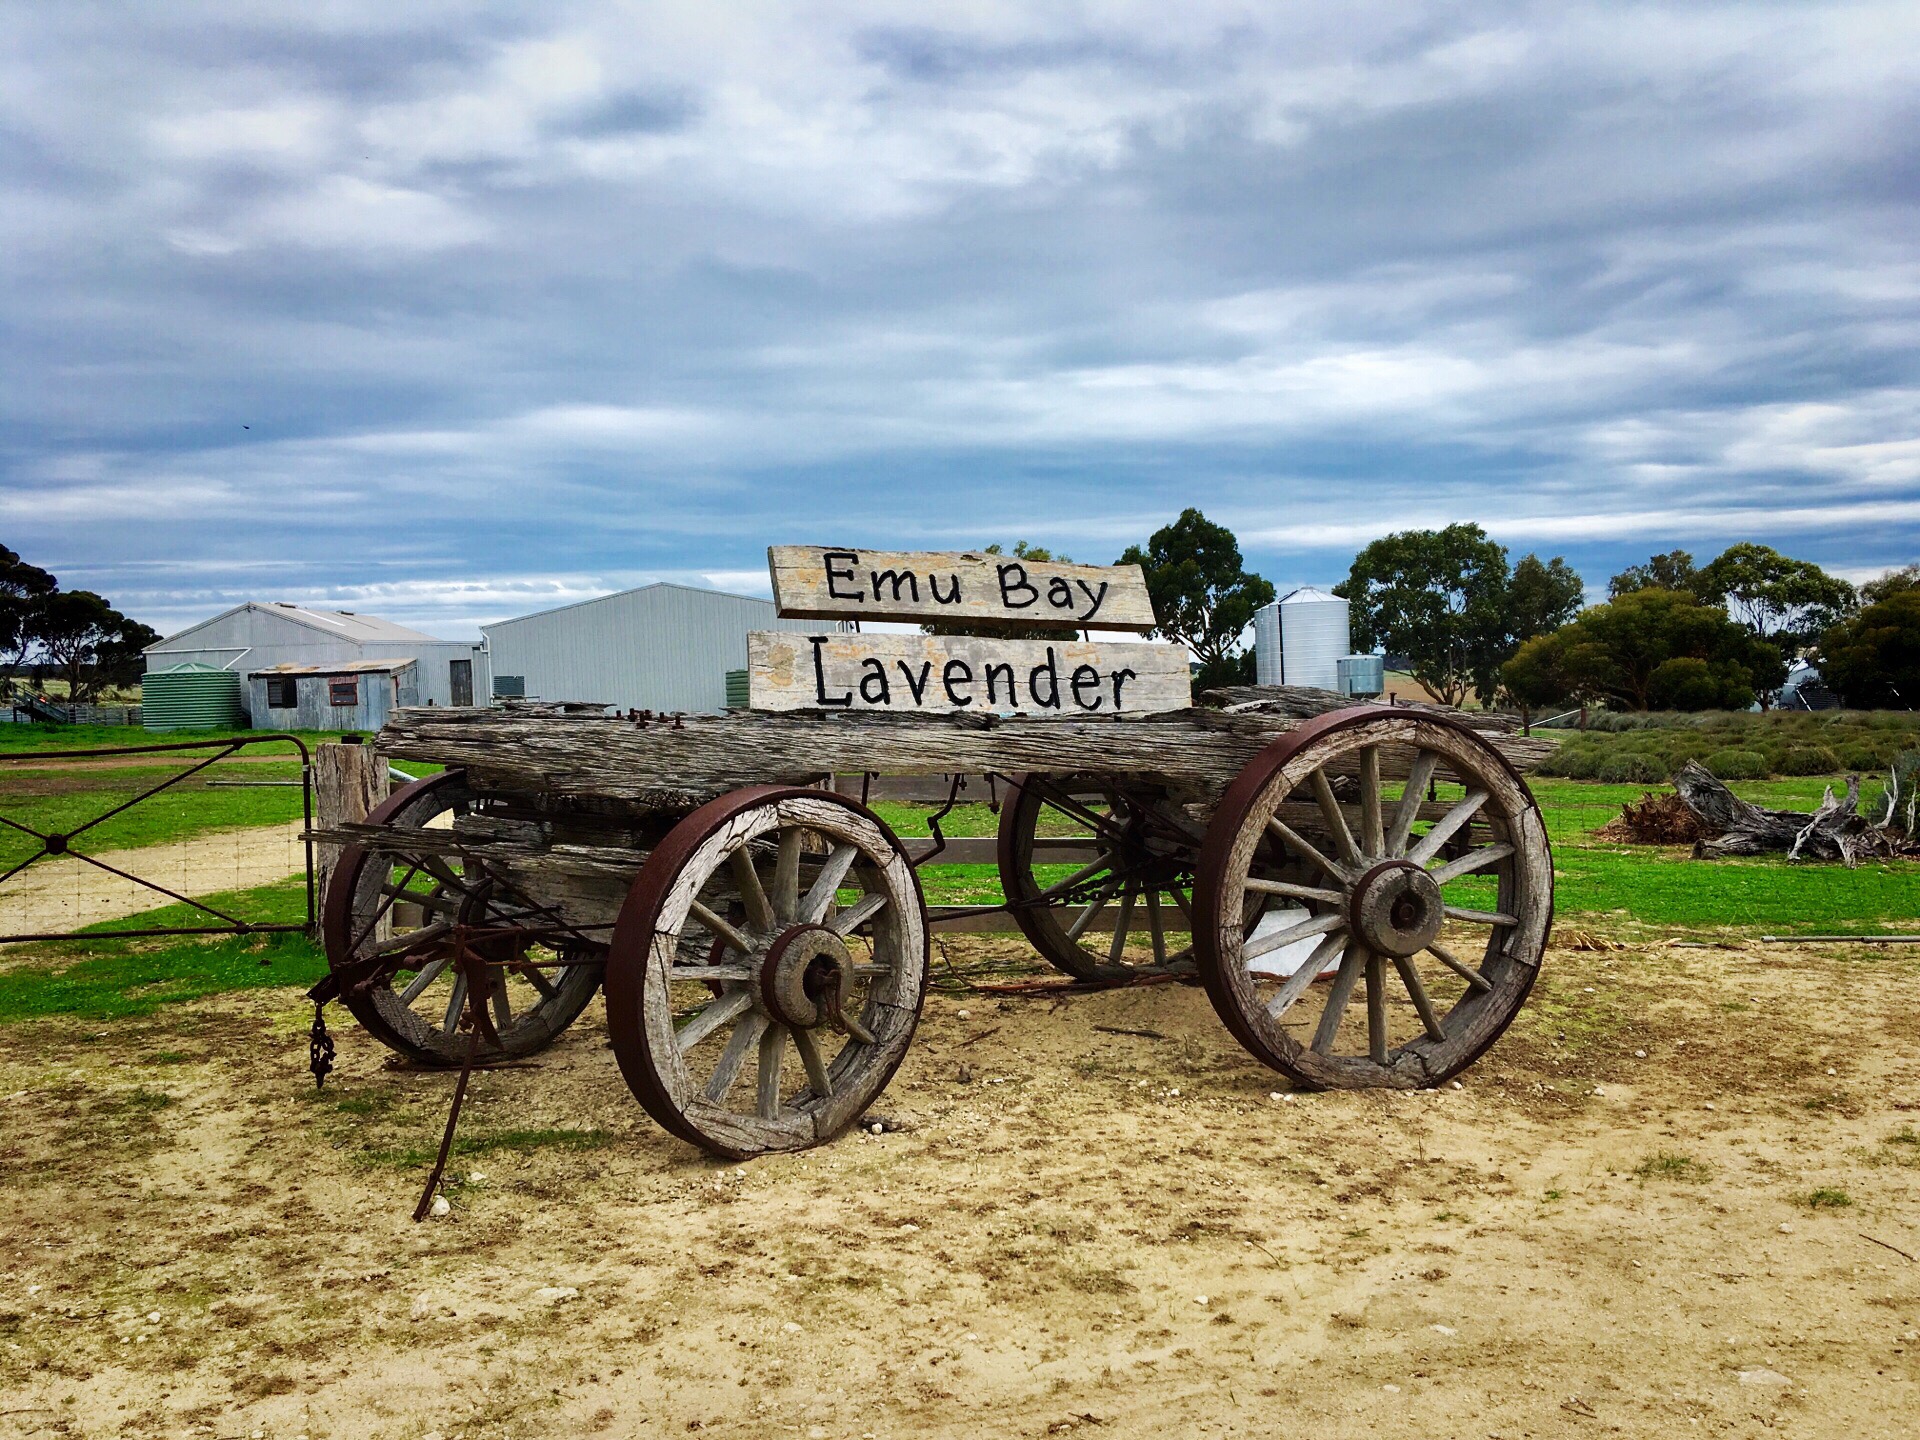 鸸鹋湾薰衣草花田 Emu Bay Lavender Farm 位于南澳大利亚袋鼠岛，该薰衣草农庄始于